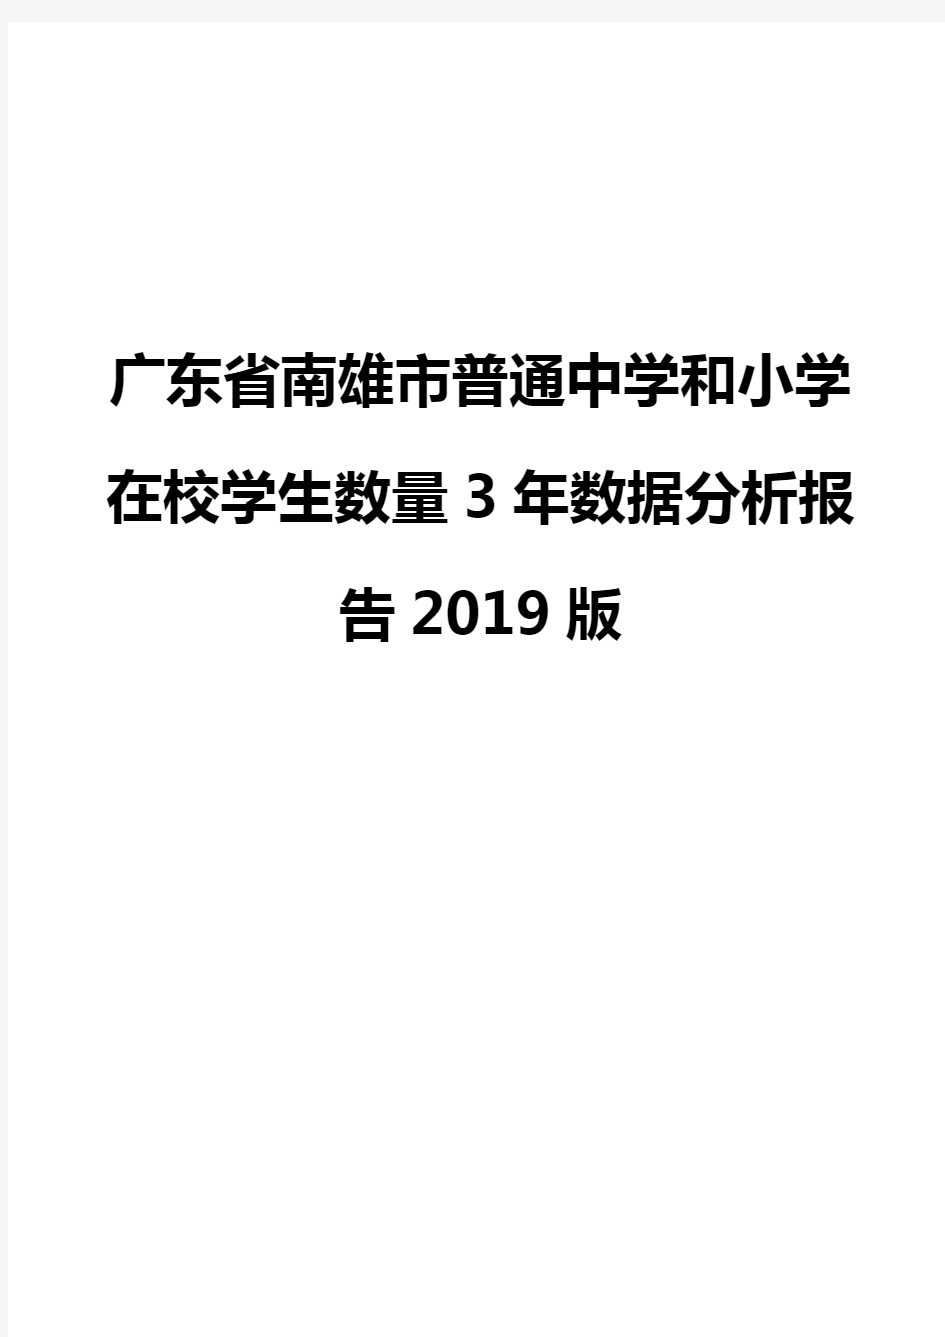 广东省南雄市普通中学和小学在校学生数量3年数据分析报告2019版